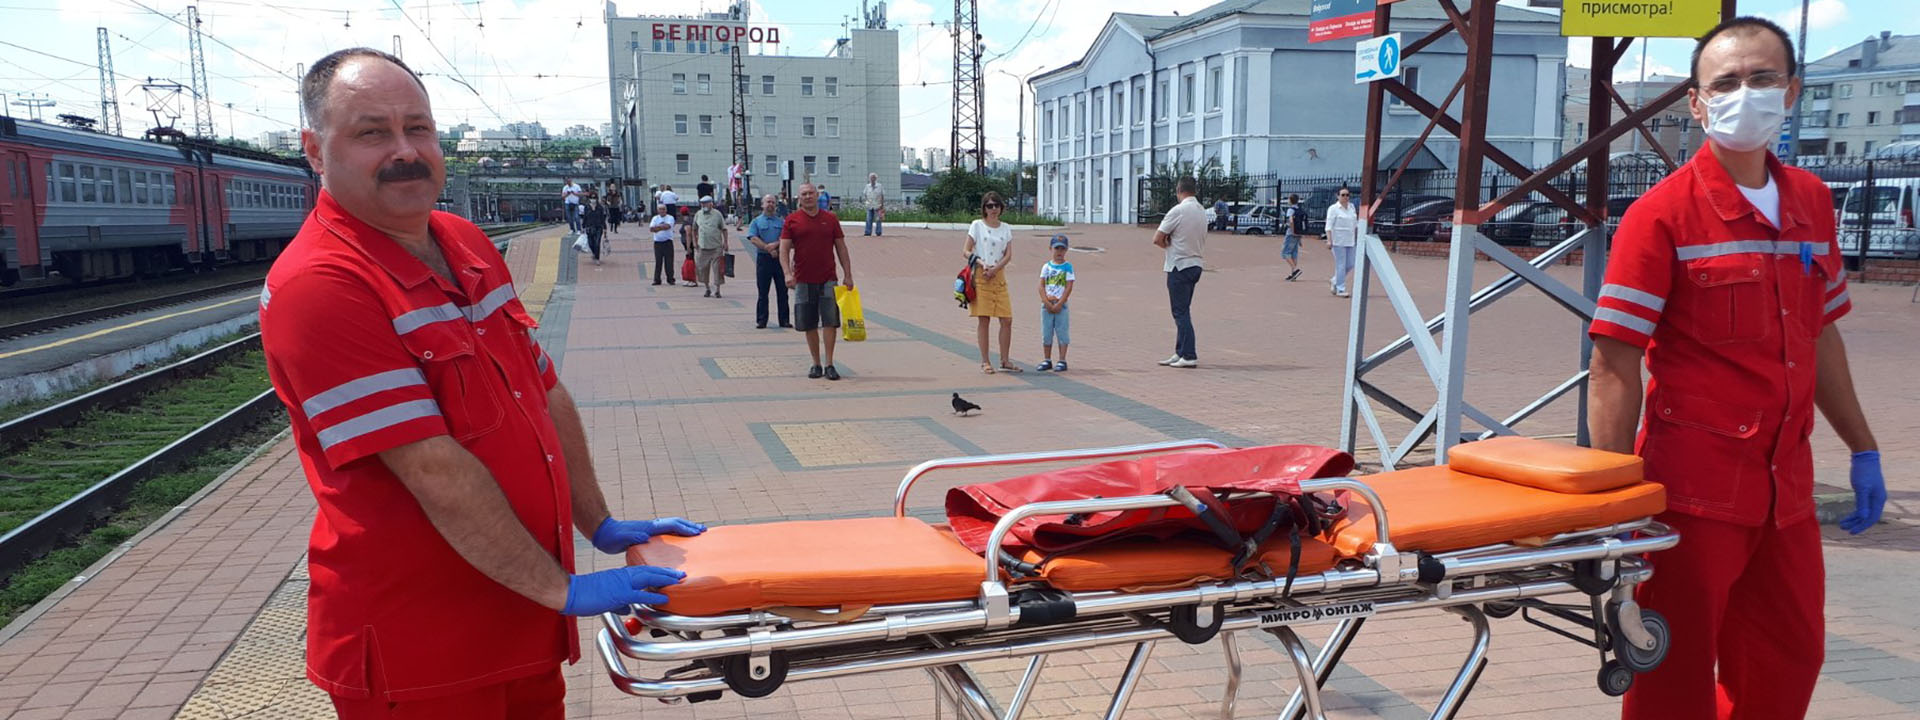 Медицинская эвакуация лиц с ограничениями в движении на железнодорожный вокзал